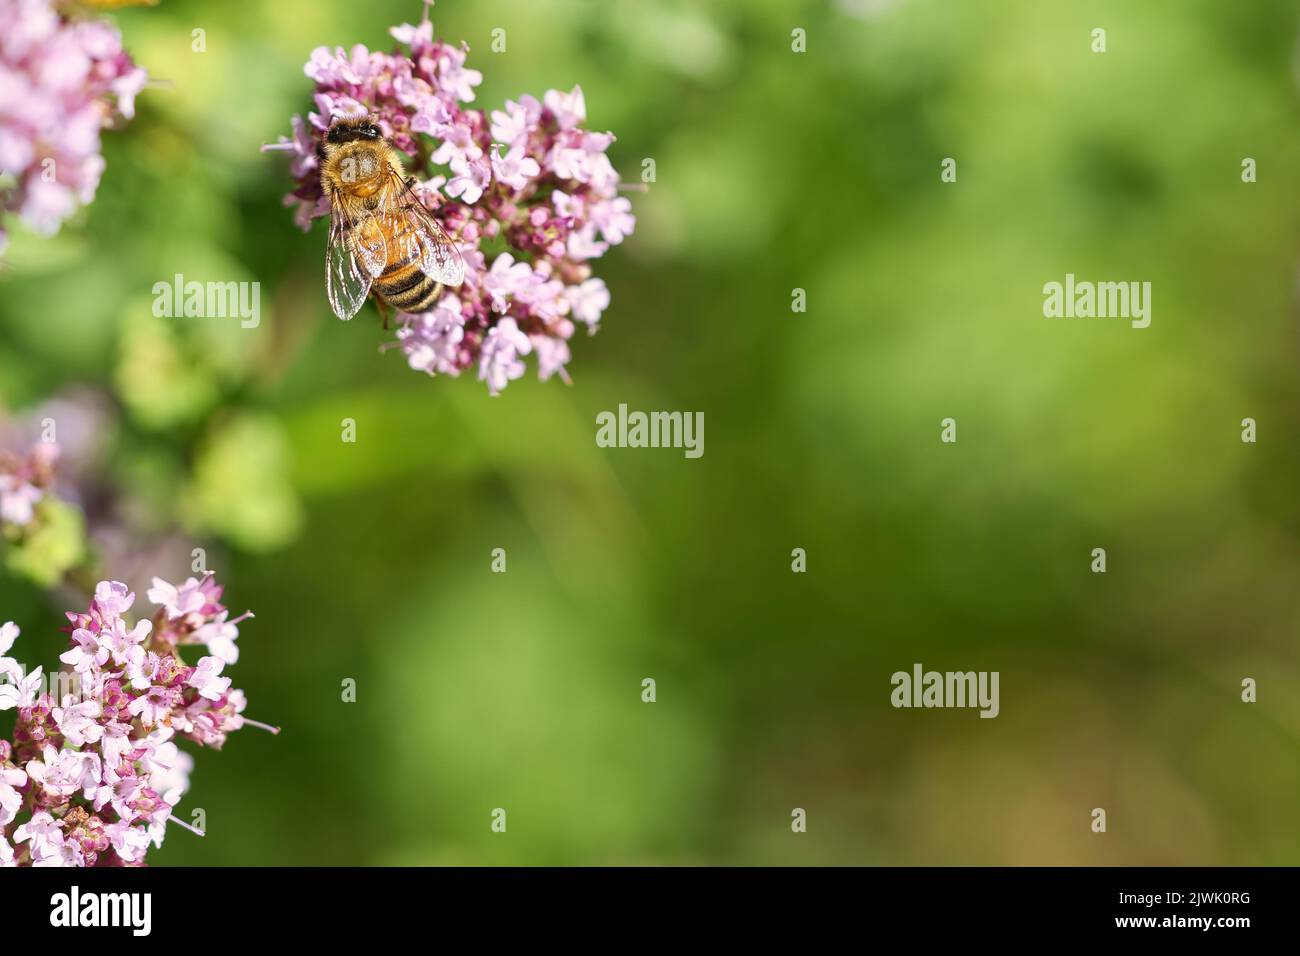 Honigbiene sammelt Nektar auf einer Blume des Blütenschmetterlingsbusches. Fleißige Insekten aus der Natur. Von Bienen ernten wir den Honig. Tierfoto aus dem Natu Stockfoto